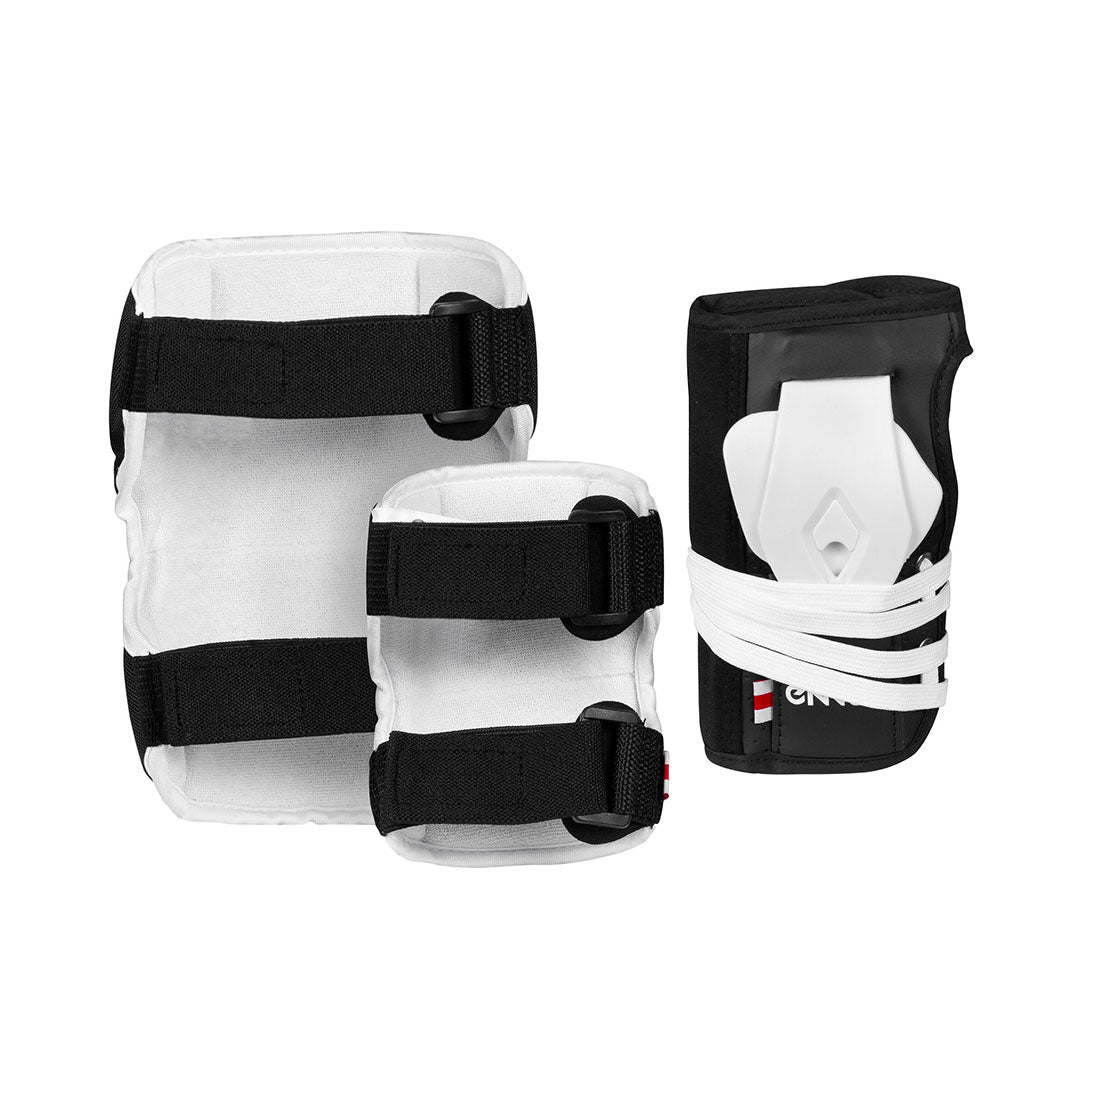 Ennui Park Tri-Pack Protective Gear